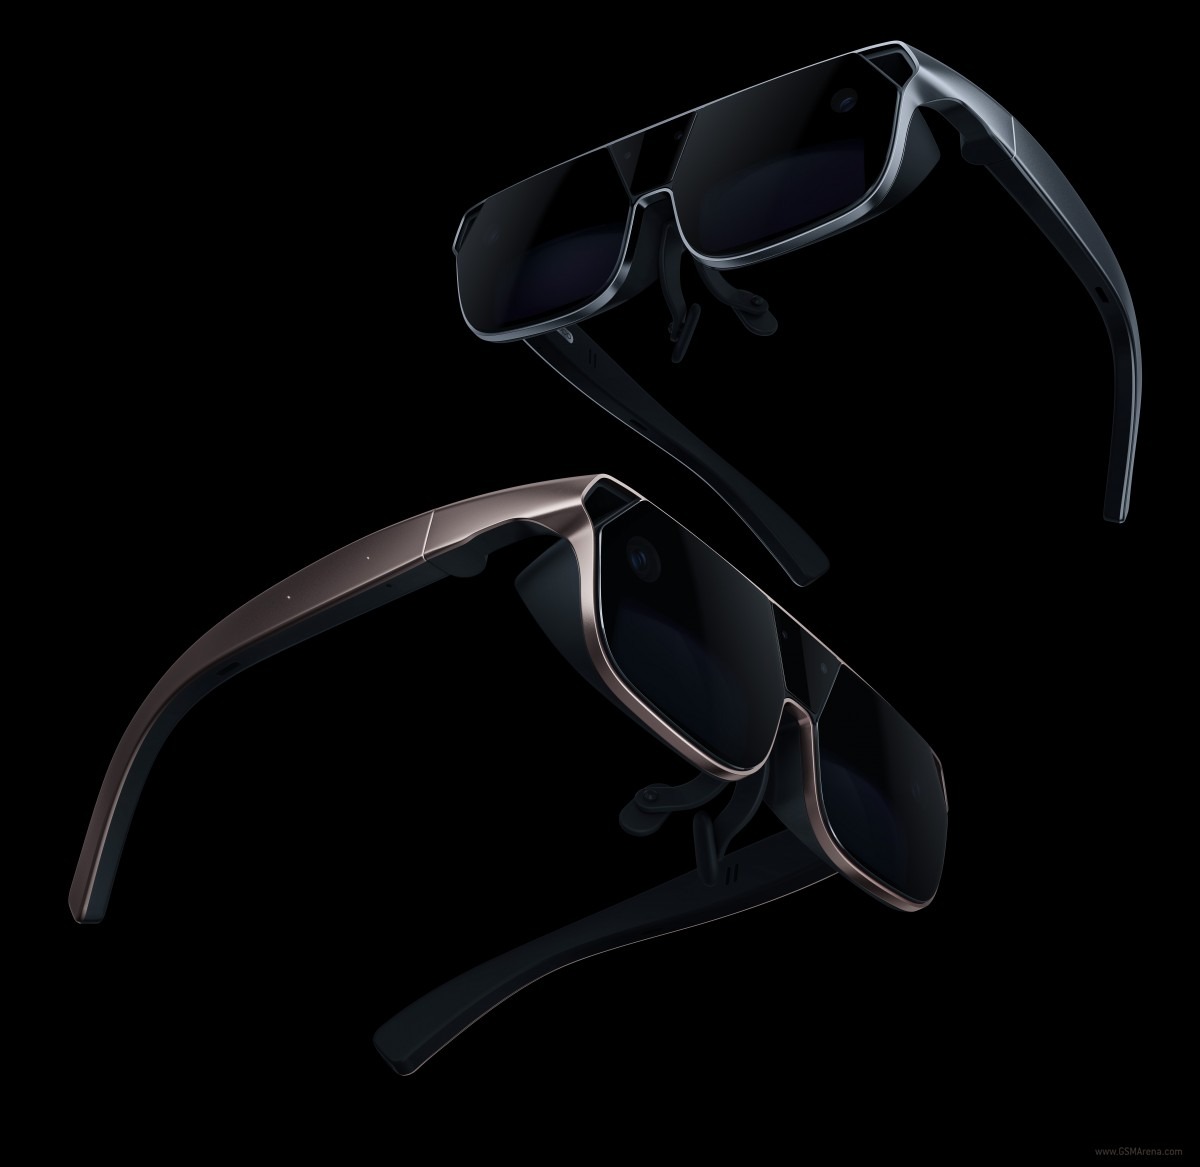 Oppo AR Glass 2021 artırılmış gerçeklik gözlüğü tanıtıldı